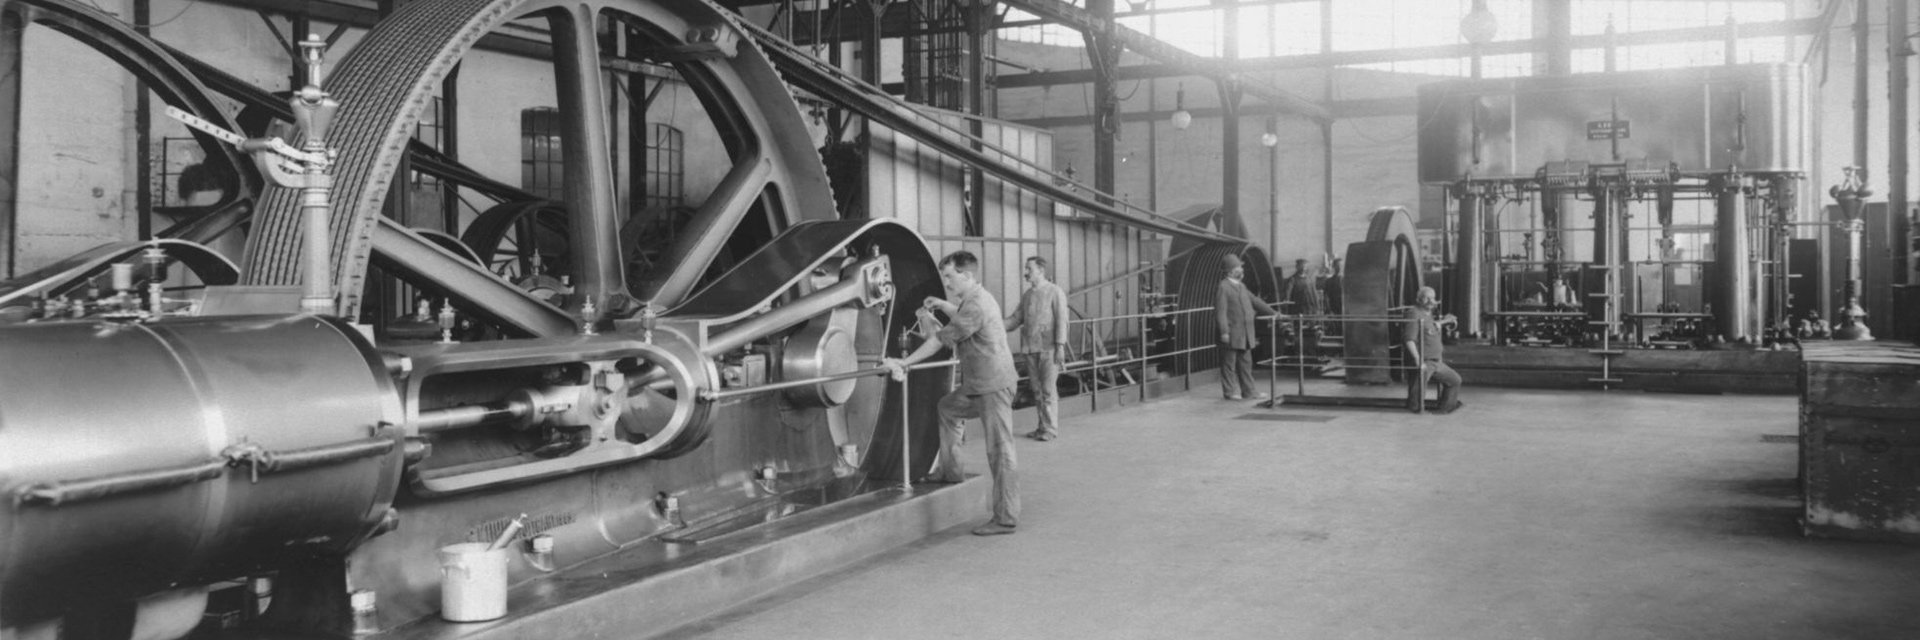 In einer Industriehalle arbeiten Arbeiter an einer Dampfmaschine